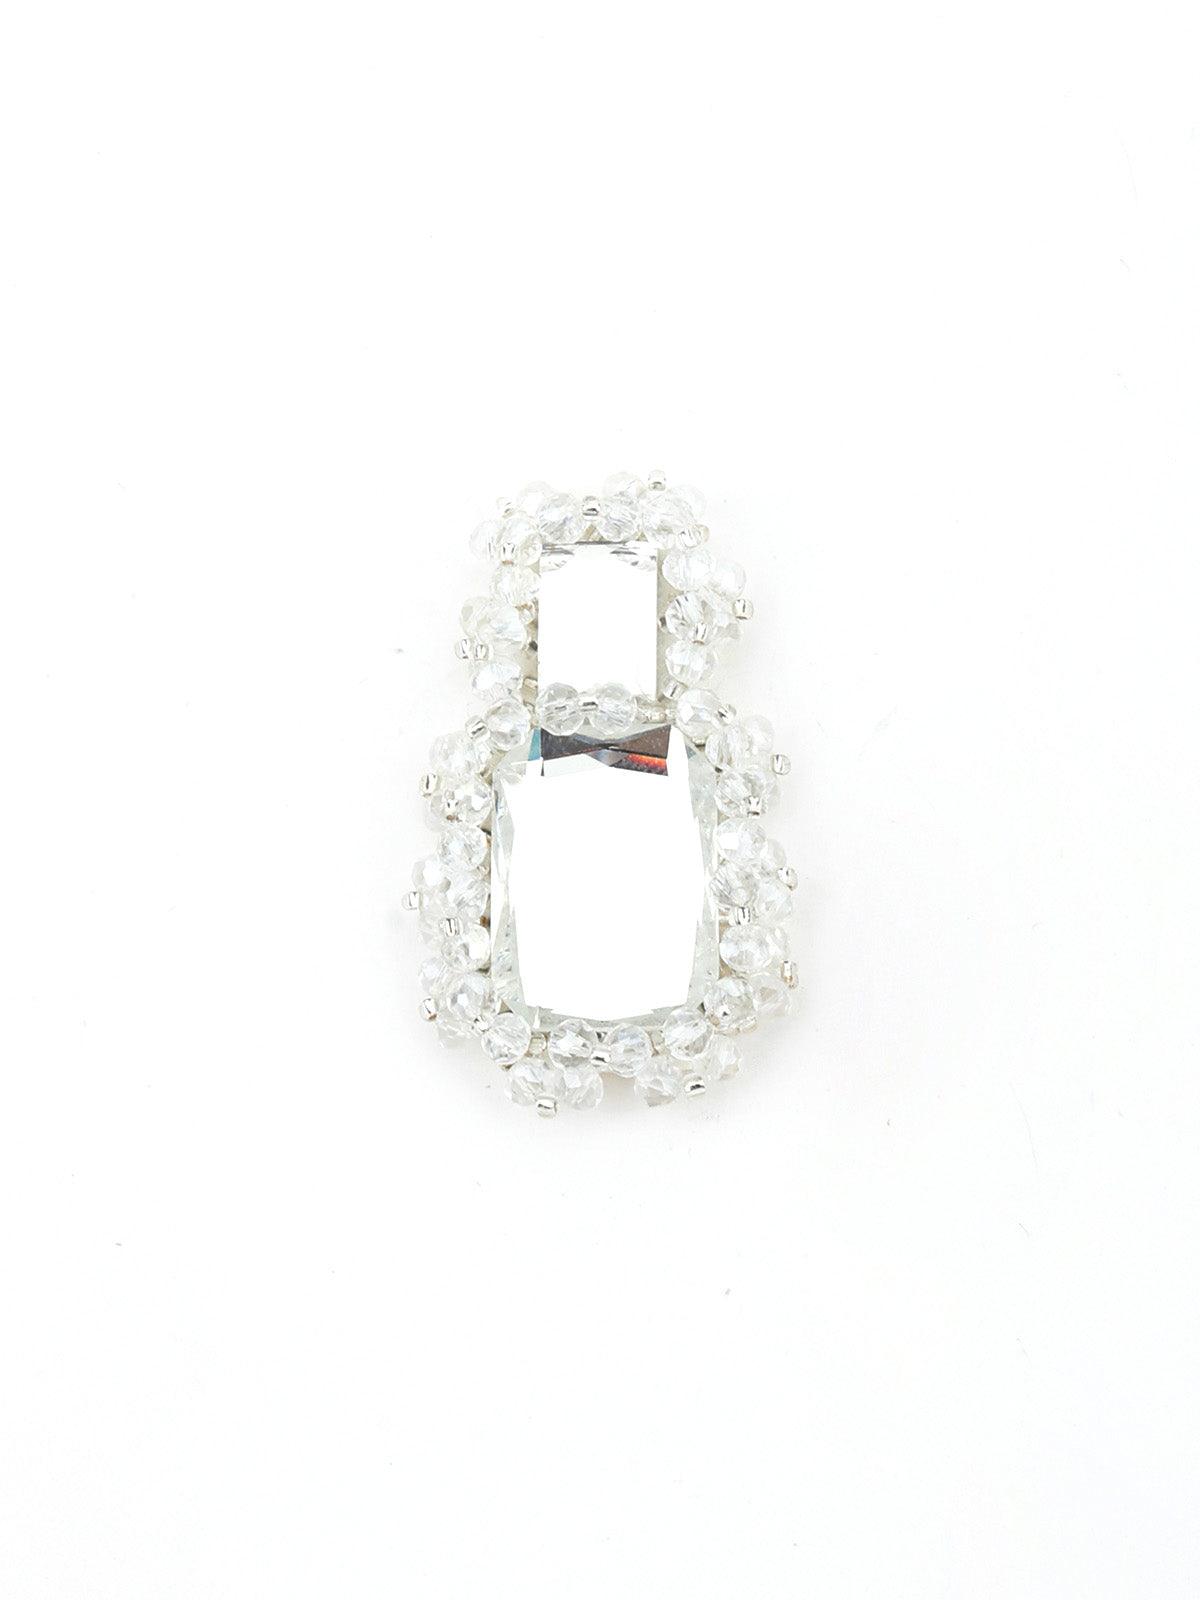 Rectangular White Mirror Dangle Earrings - Odette